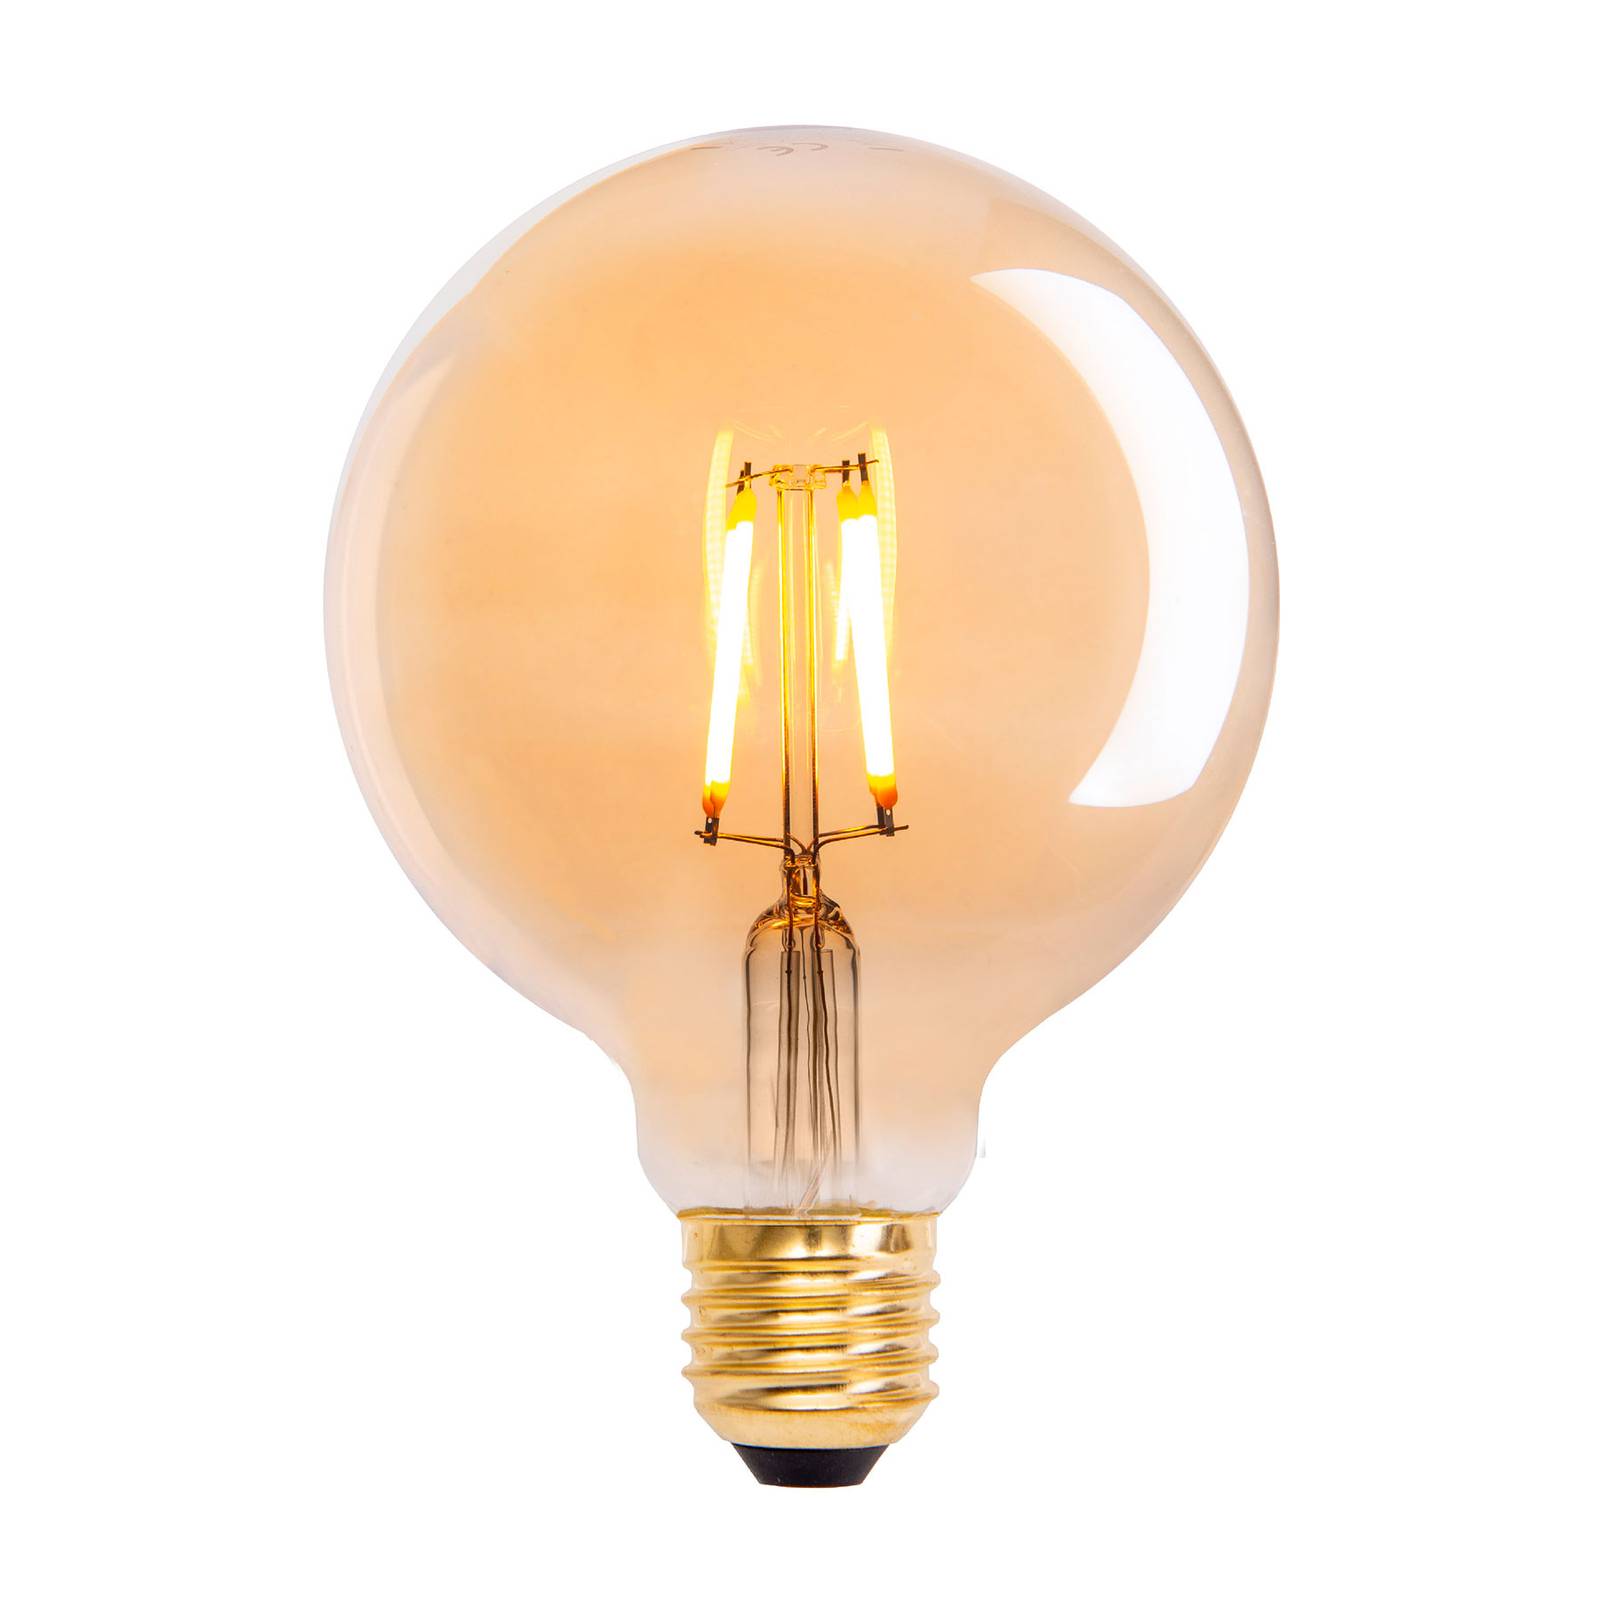 LED-Globelampe E27 4,1W 310lm warmweiß gold 3erSet von Naeve Leuchten